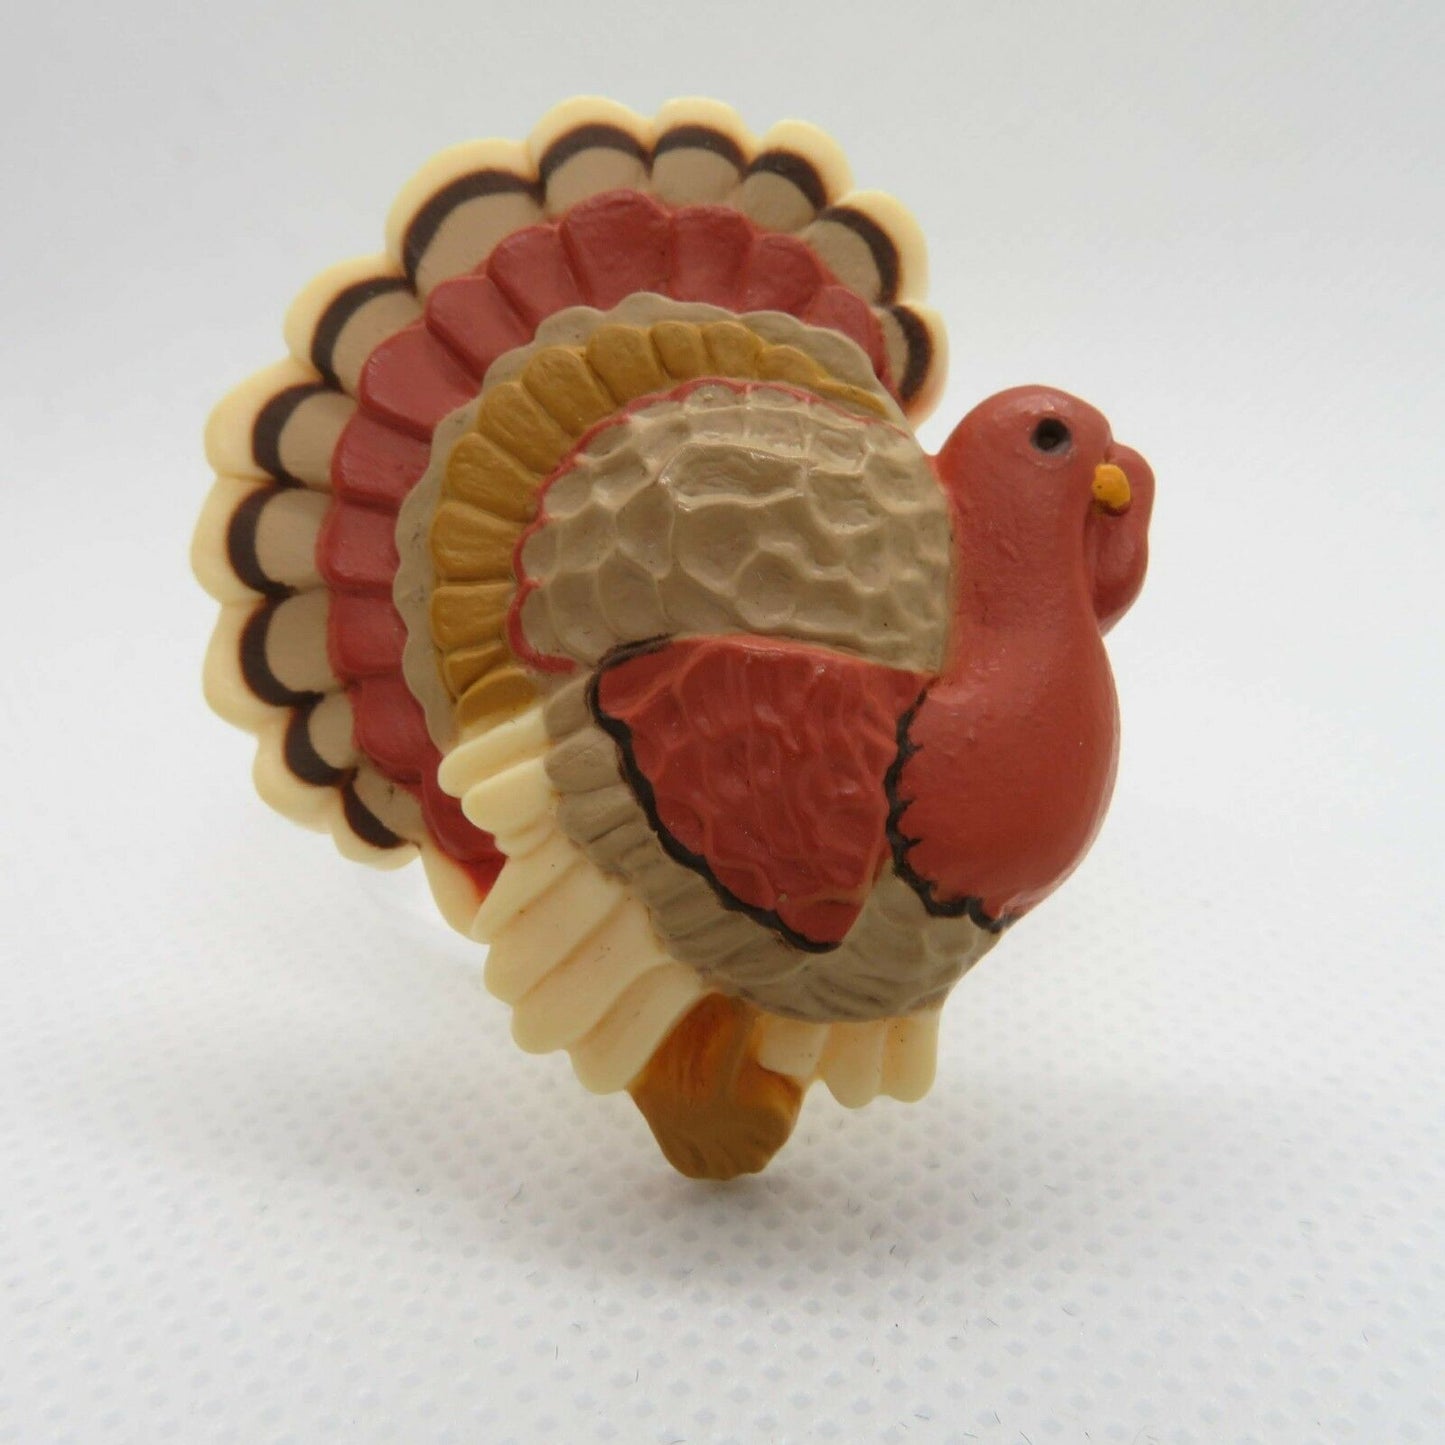 Vintage Turkey Pin Brooch Thanksgiving Fall Hallmark Plastic Holiday - At Grandma's Table